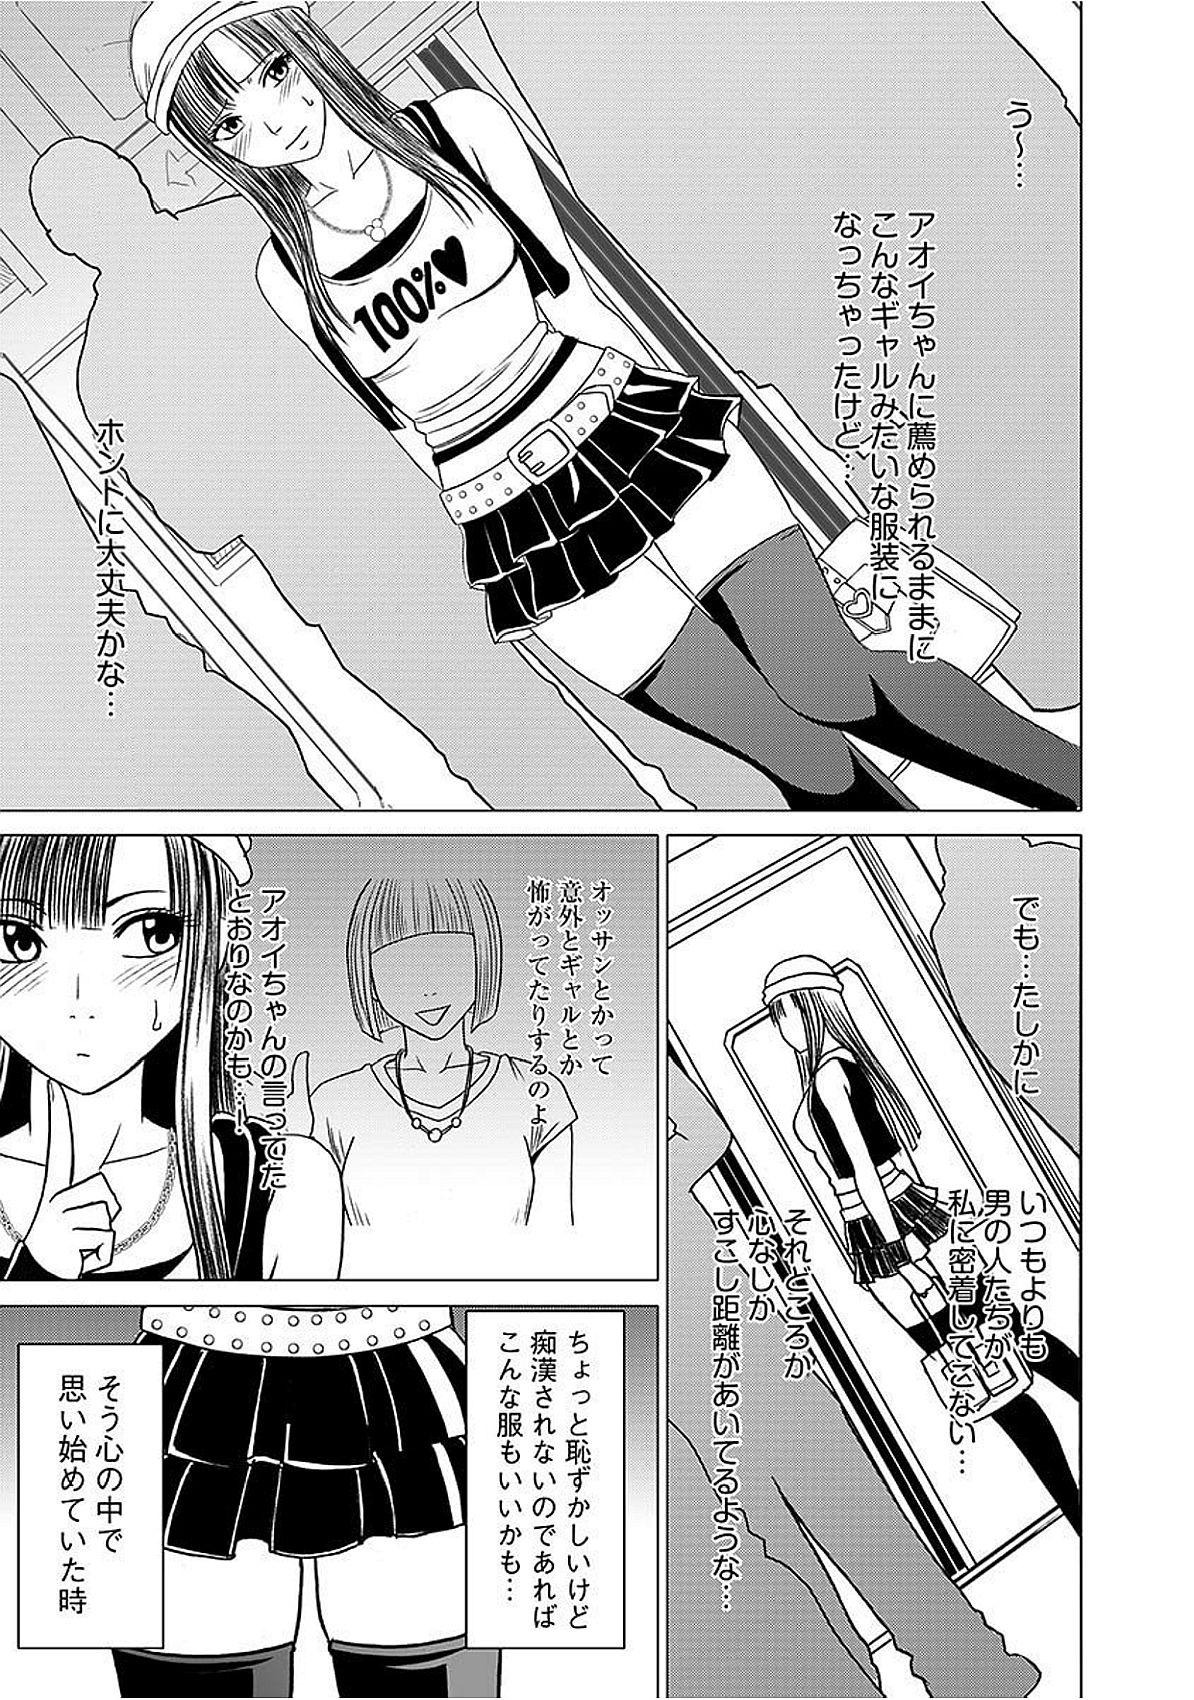 Cartoon Virgin Train 【Kanzenban】 Trimmed - Page 7